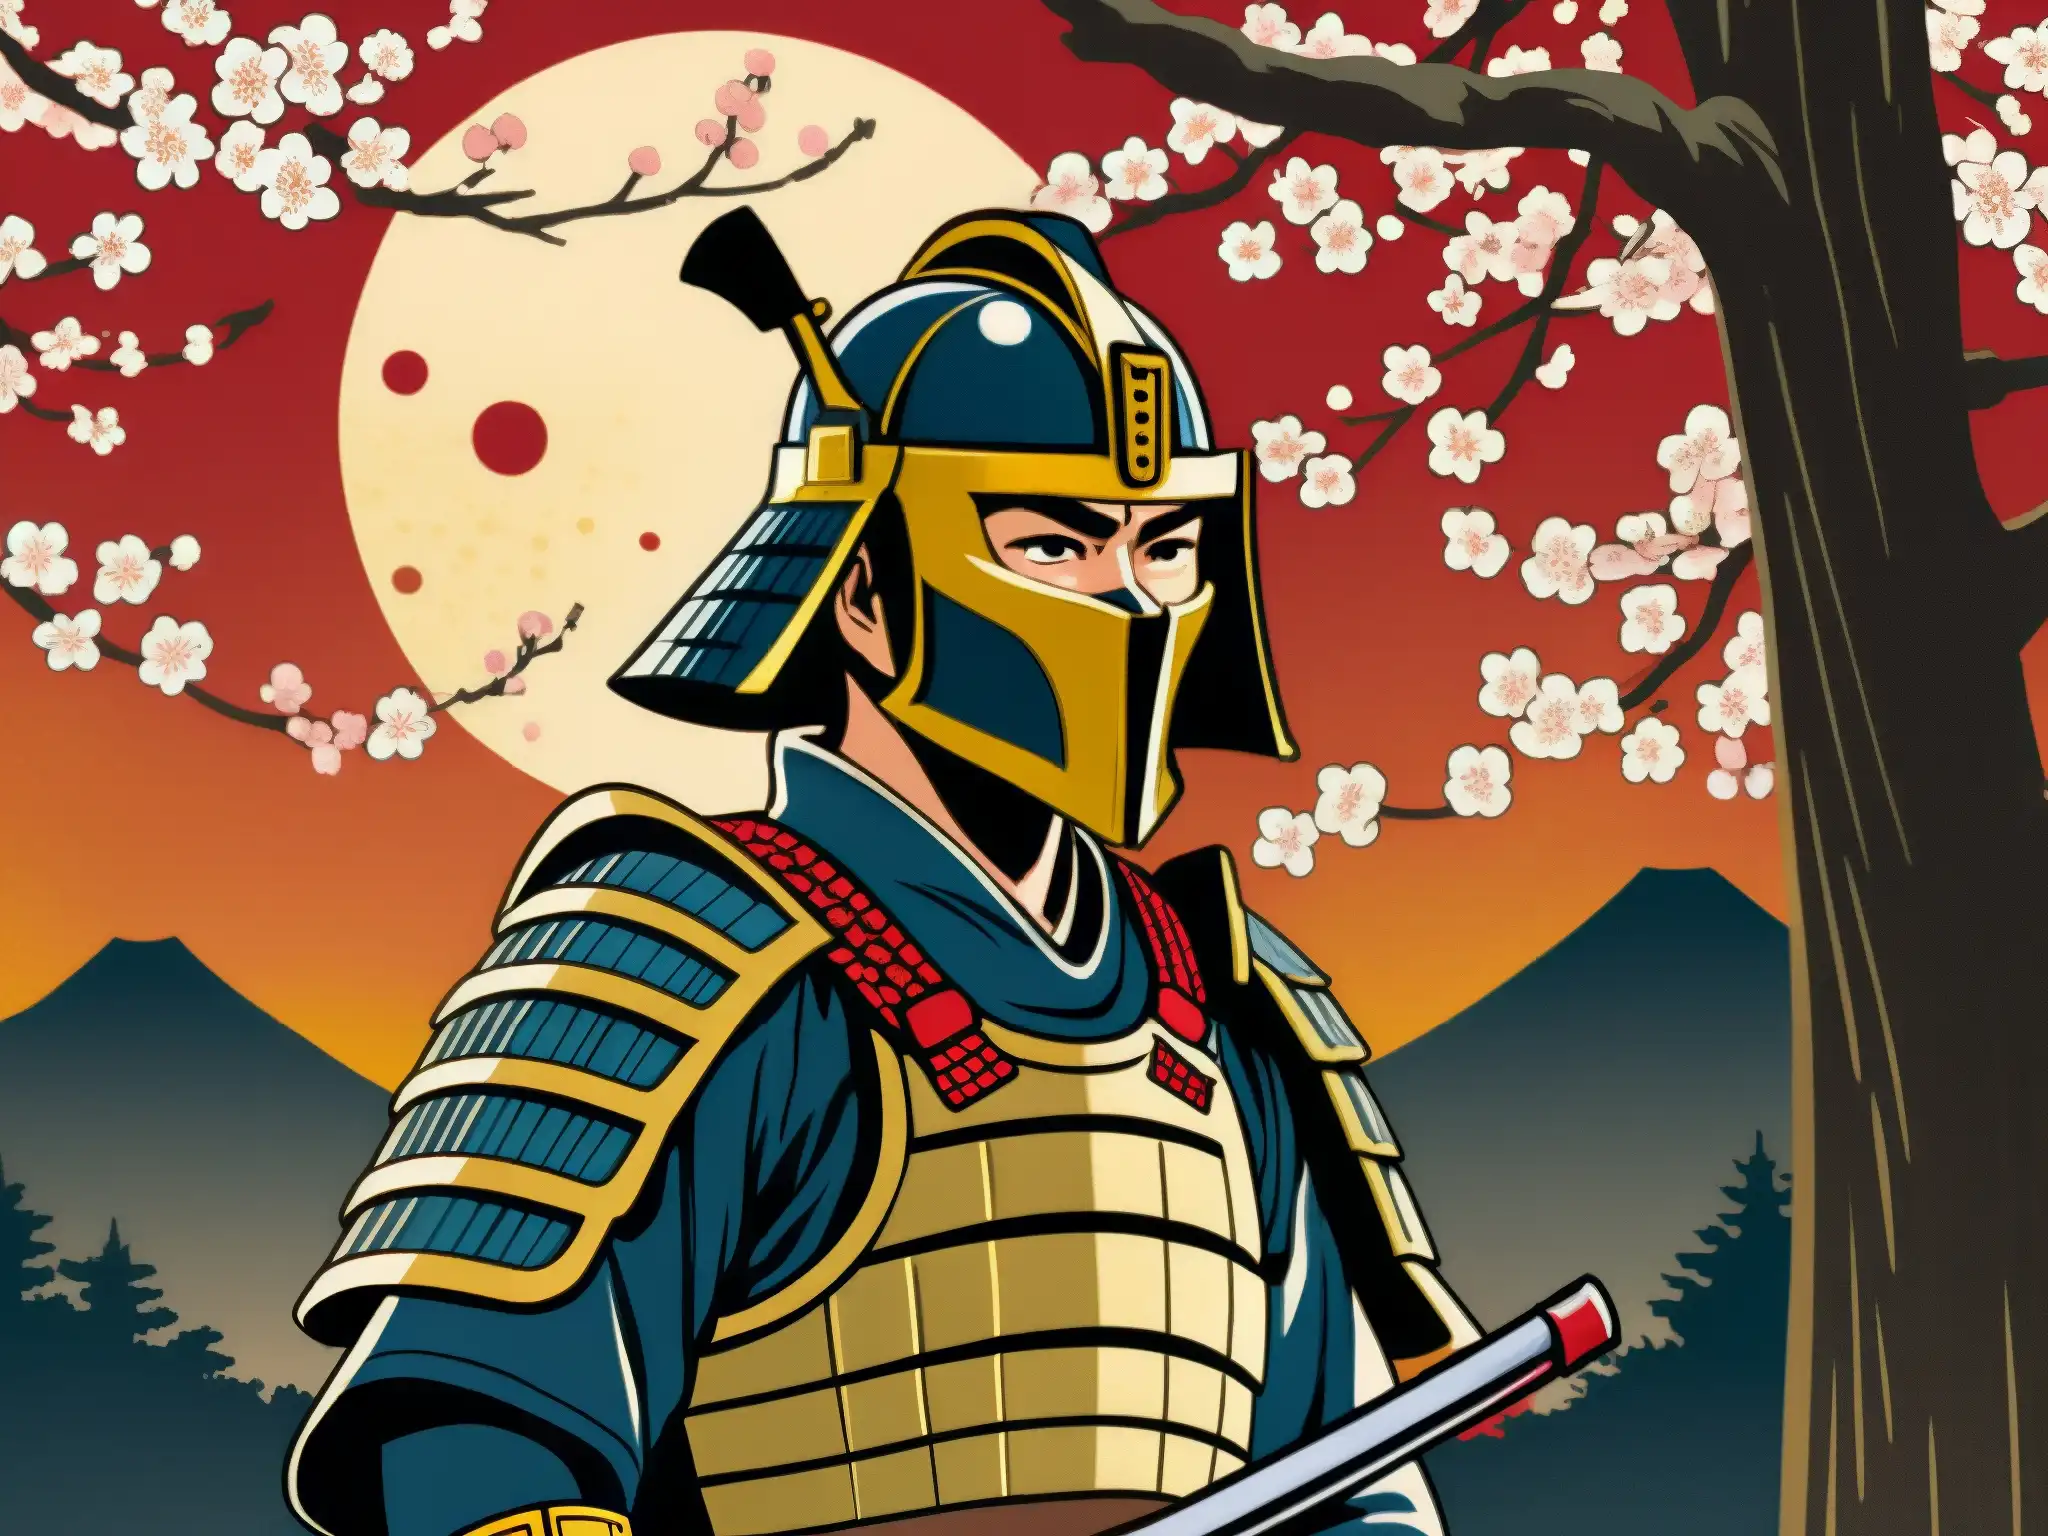 Un samurái sin cabeza emerge entre las leyendas urbanas, sosteniendo su katana manchada de sangre bajo un cálido atardecer entre los cerezos en flor